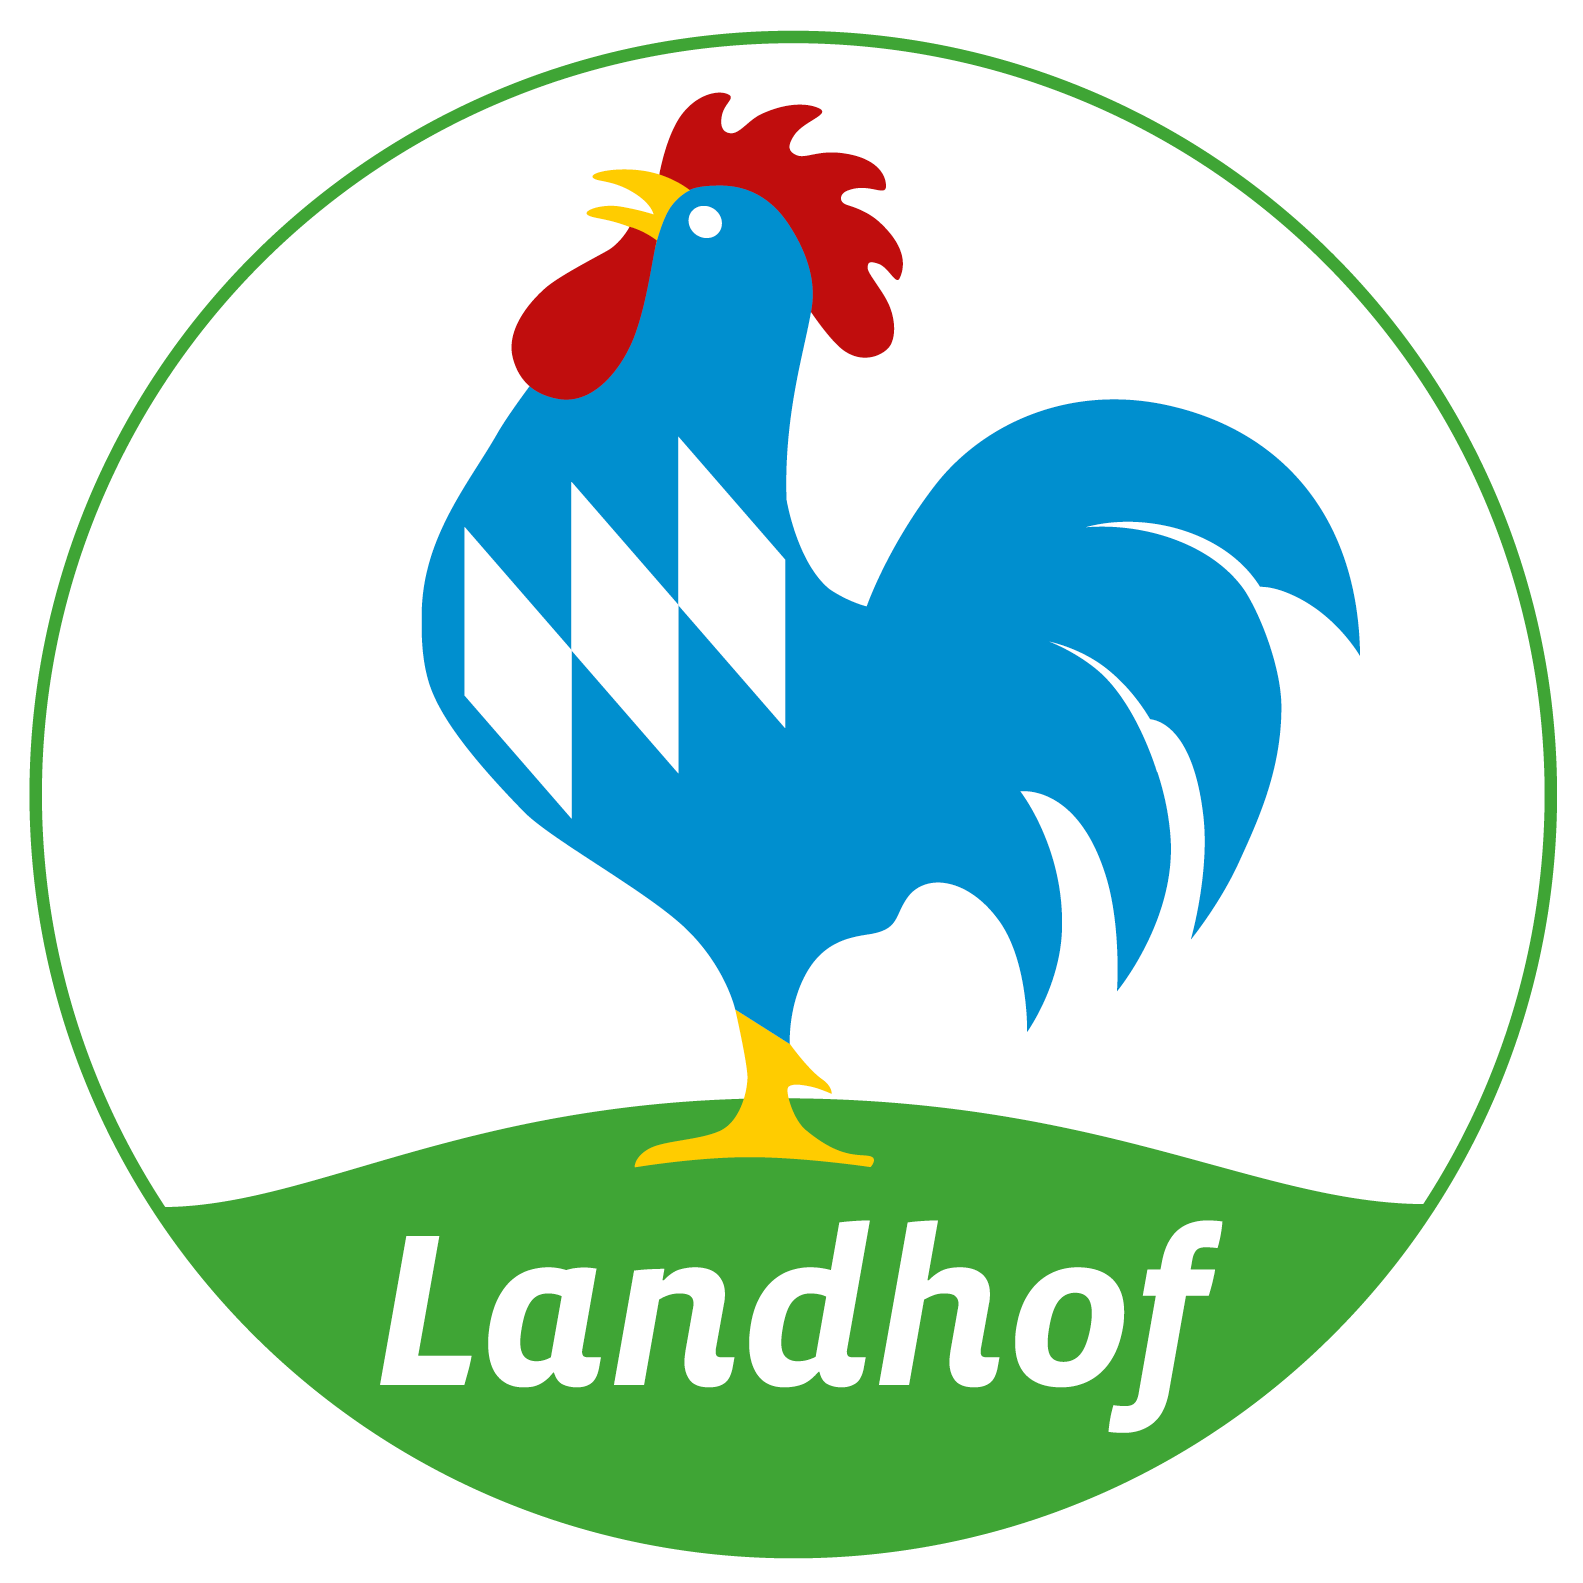 landhof logo